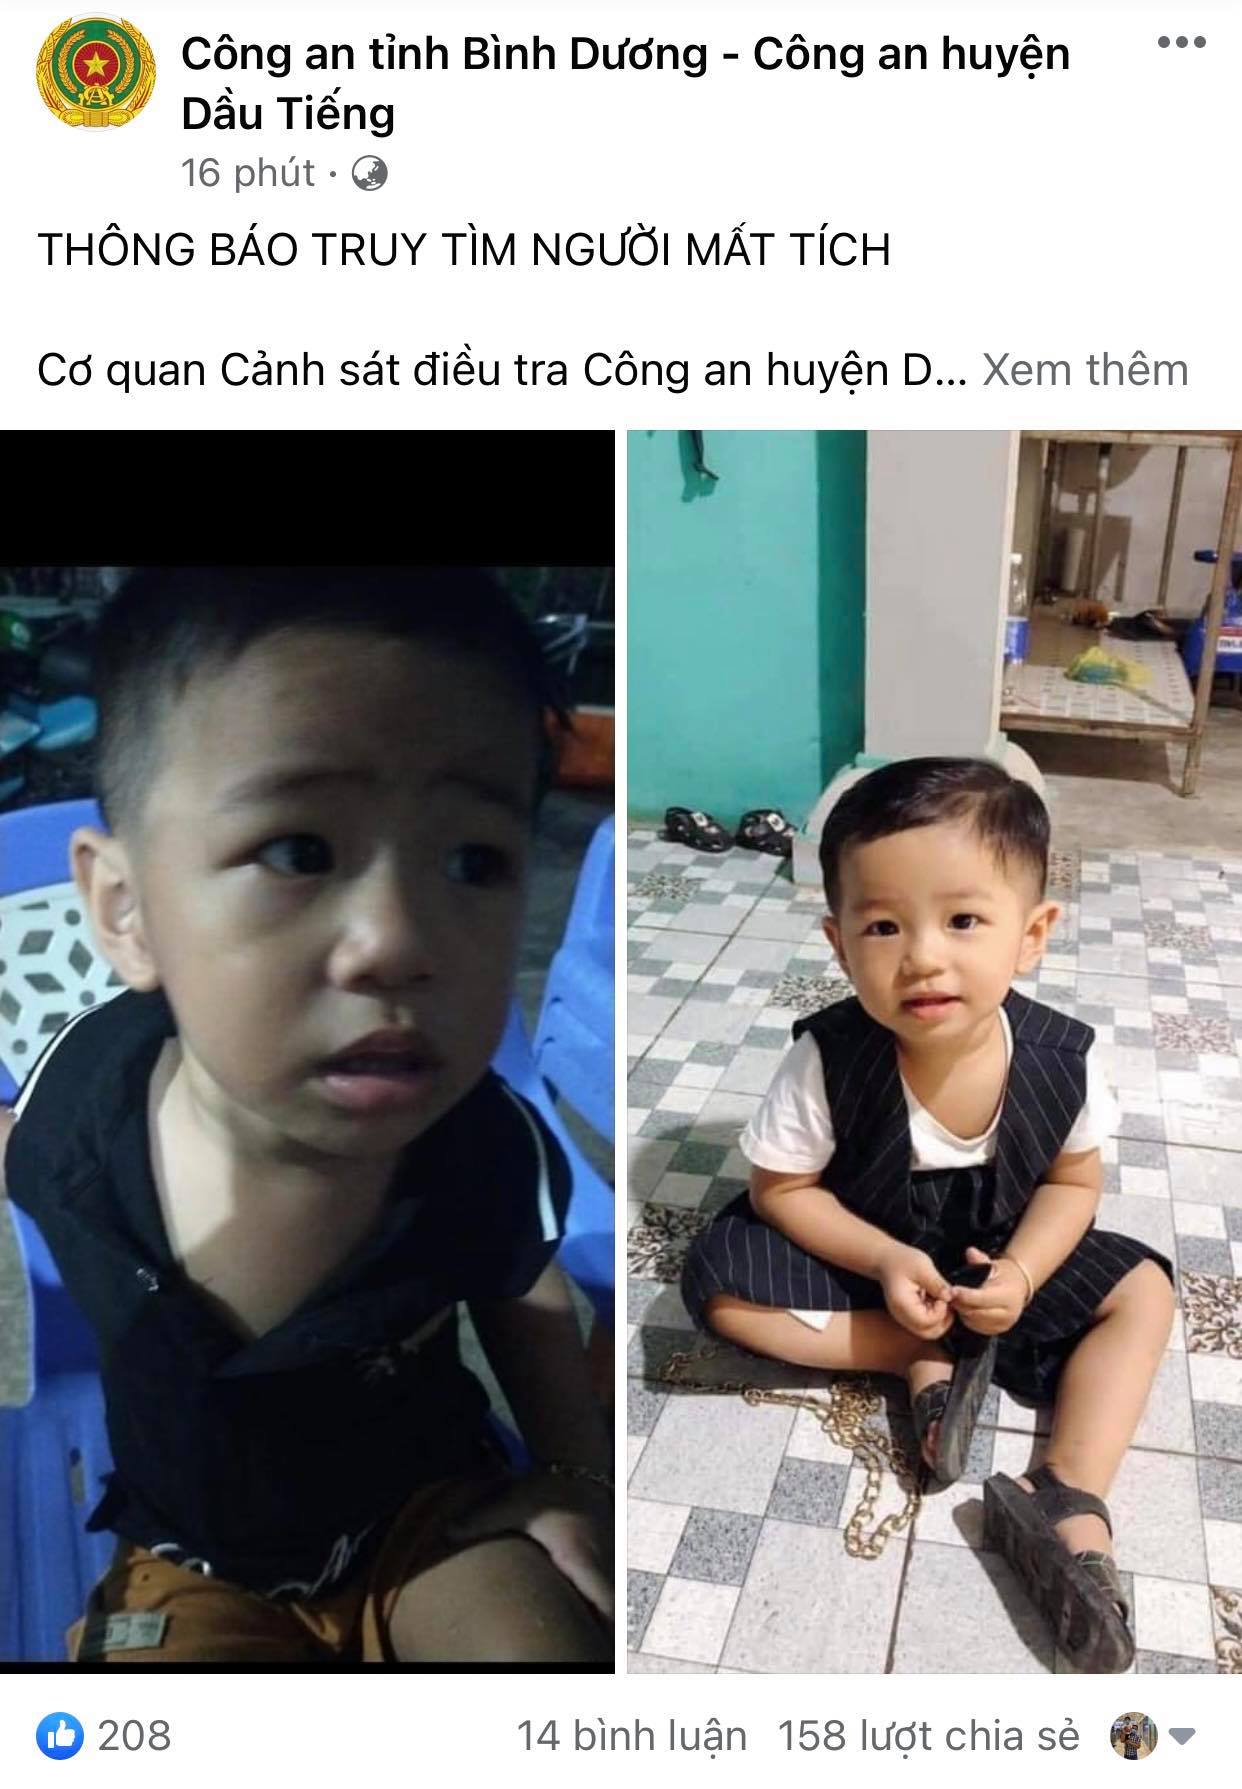 Fanpage công an huyện Dầu Tiếng đăng thông tin truy tìm tung tích cháu bé